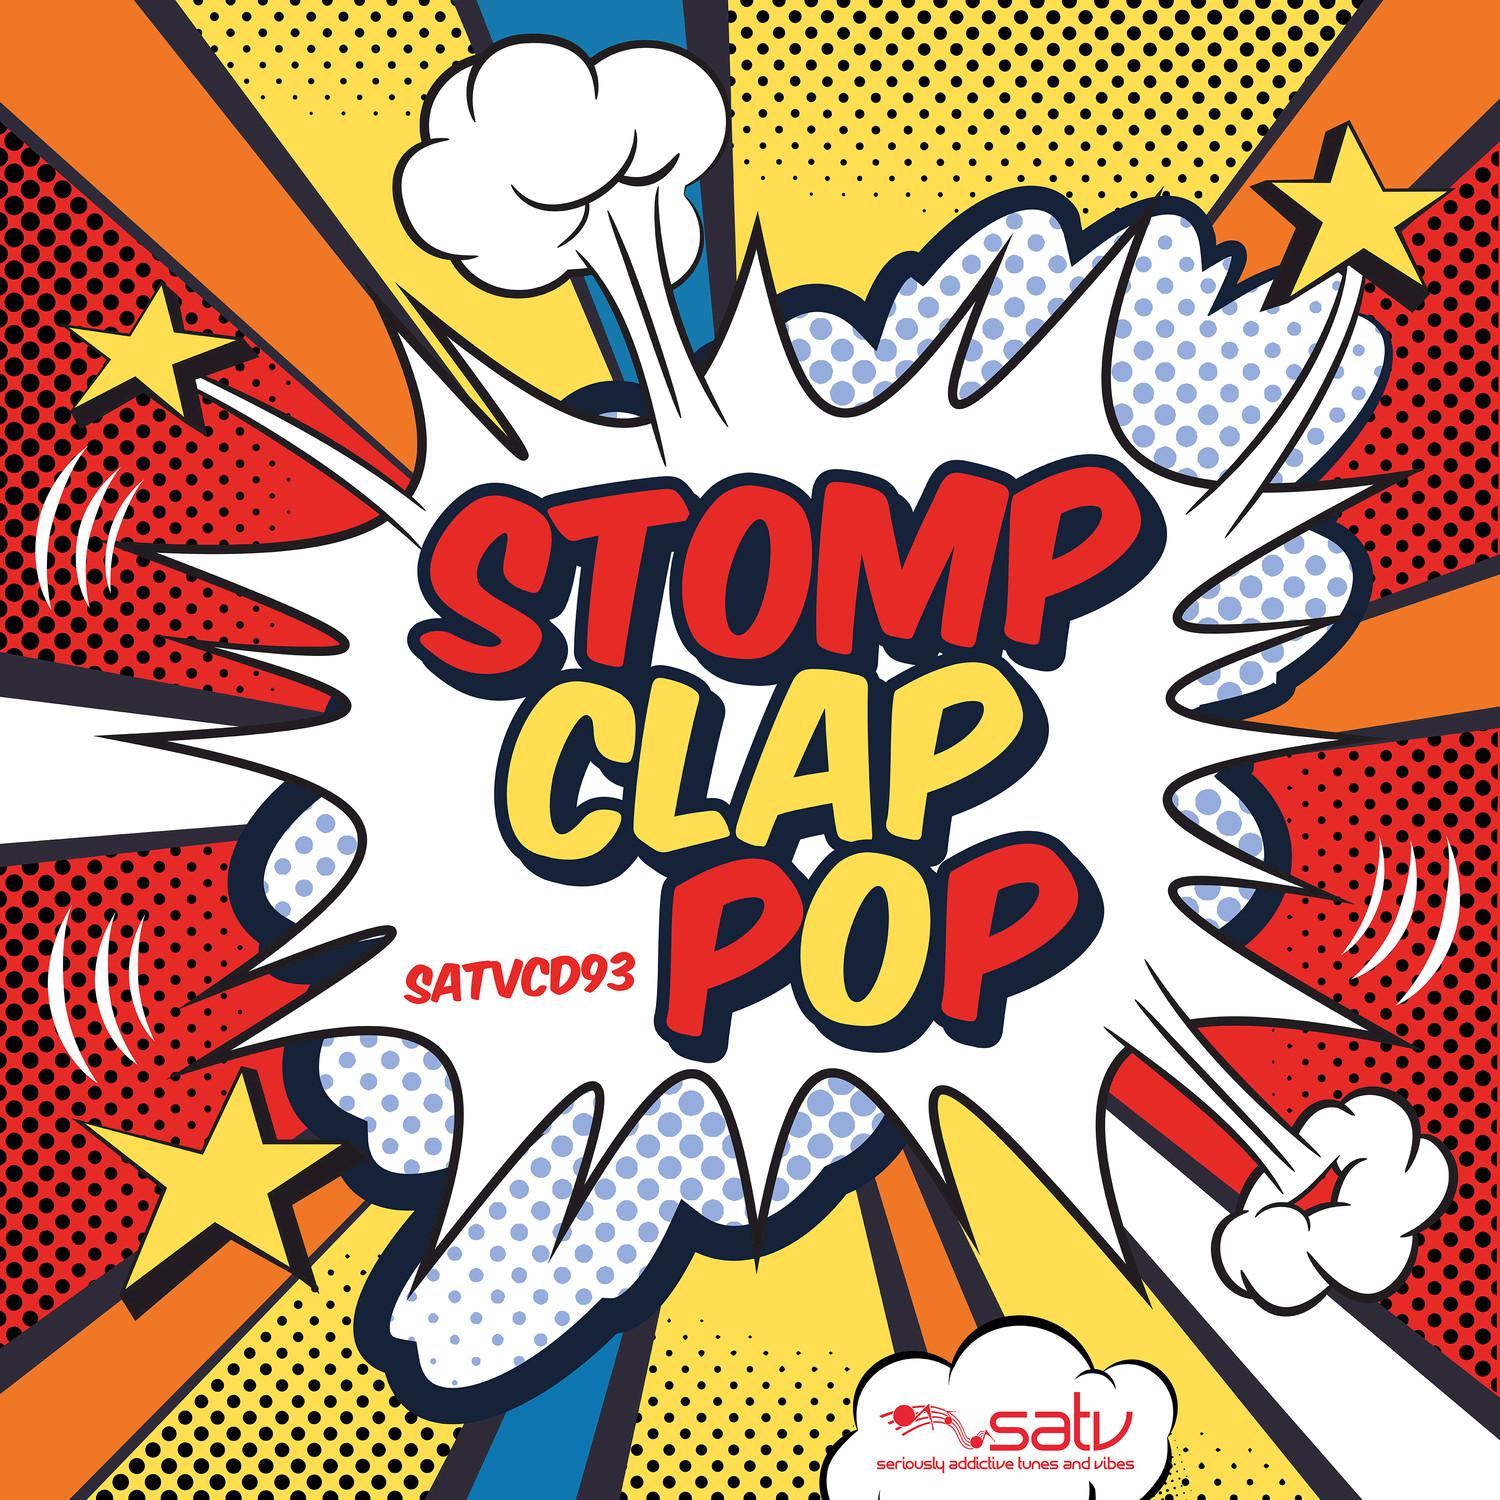 Stomp Clap Pop